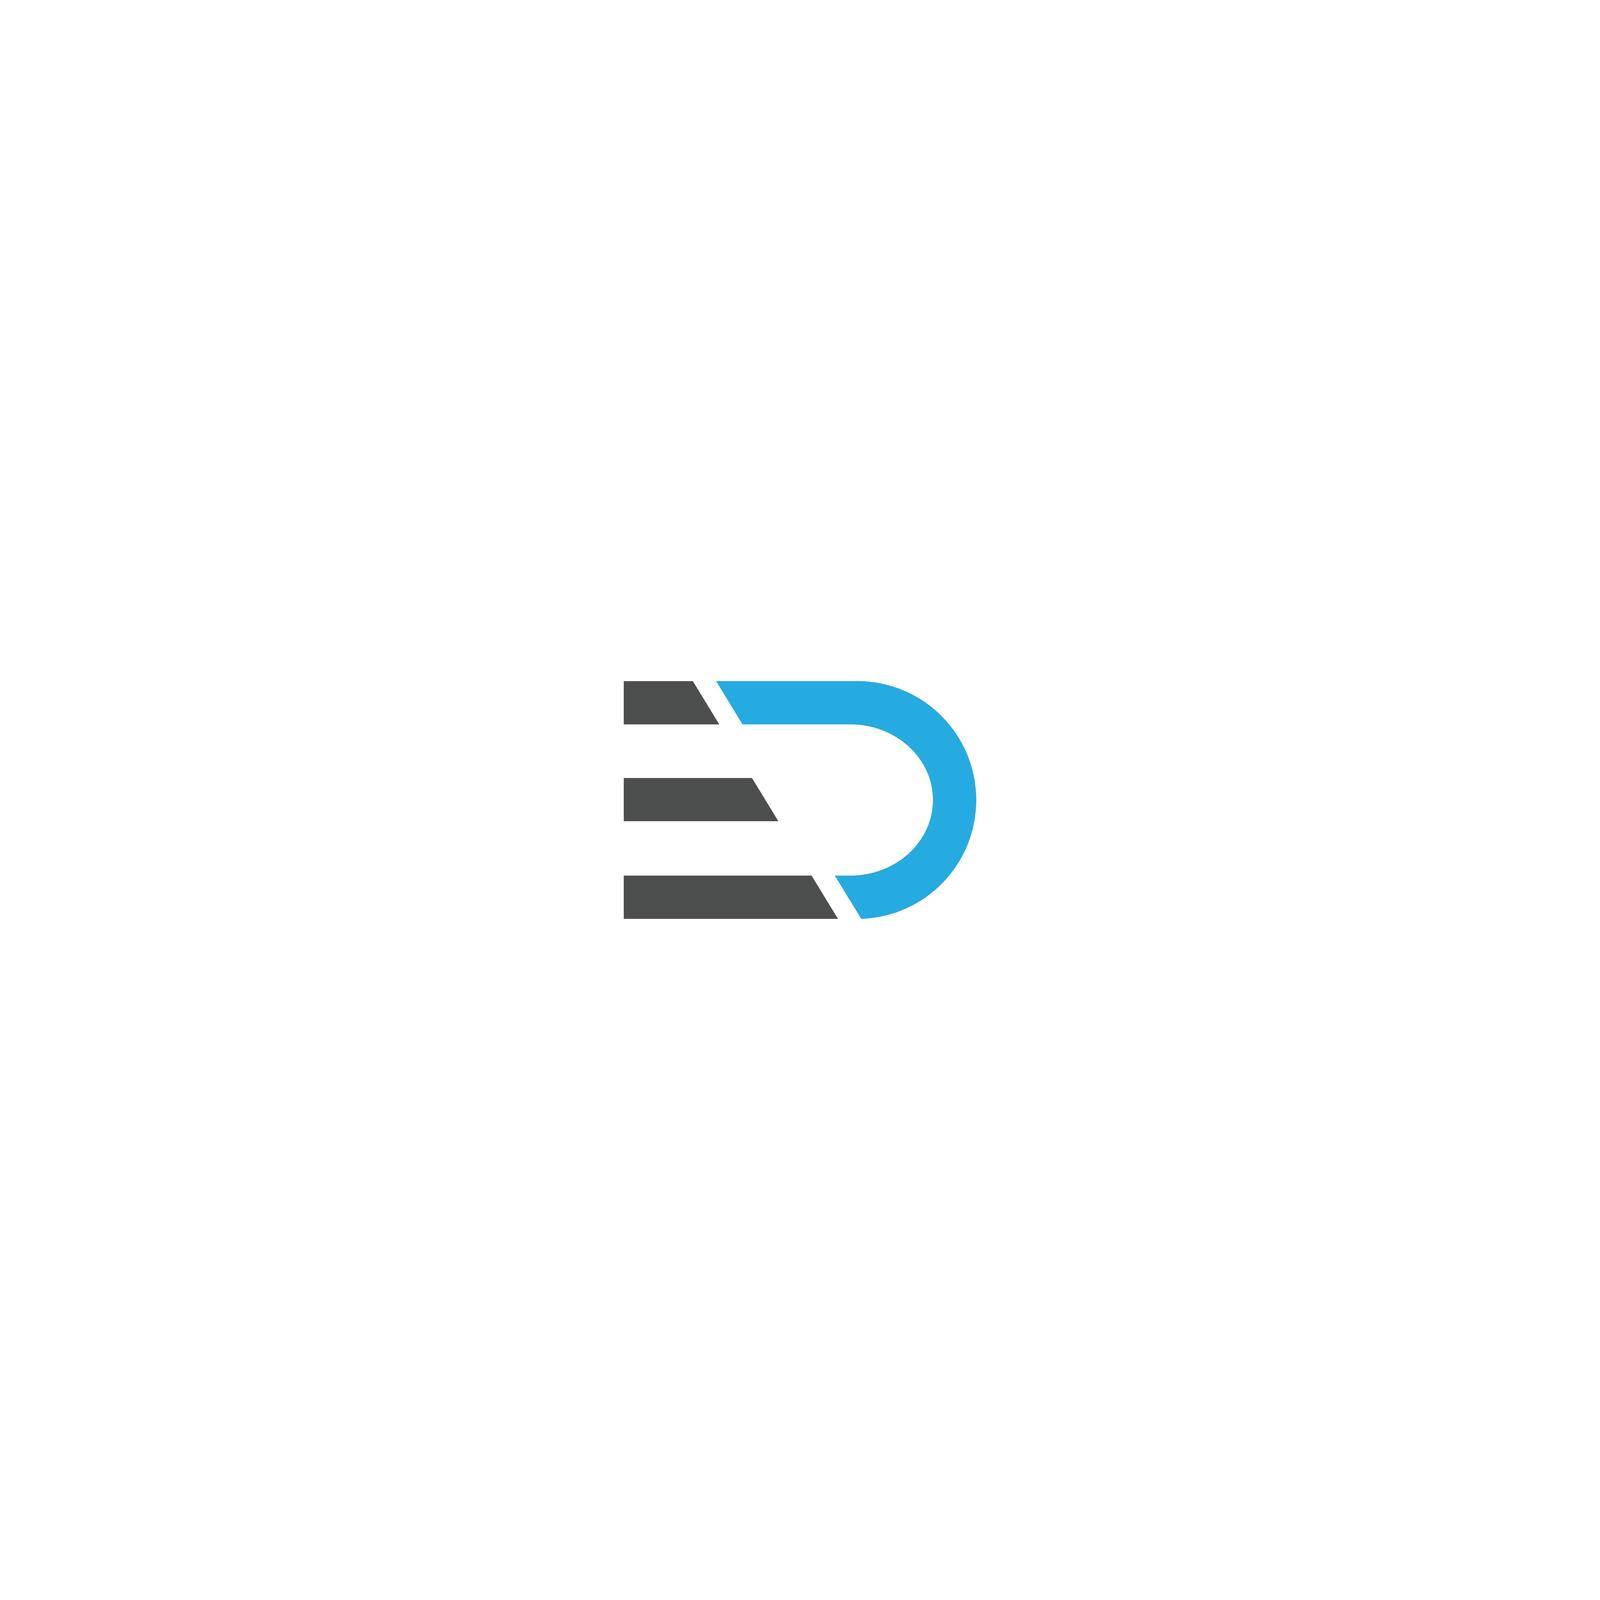 Letter ed logo images design vector